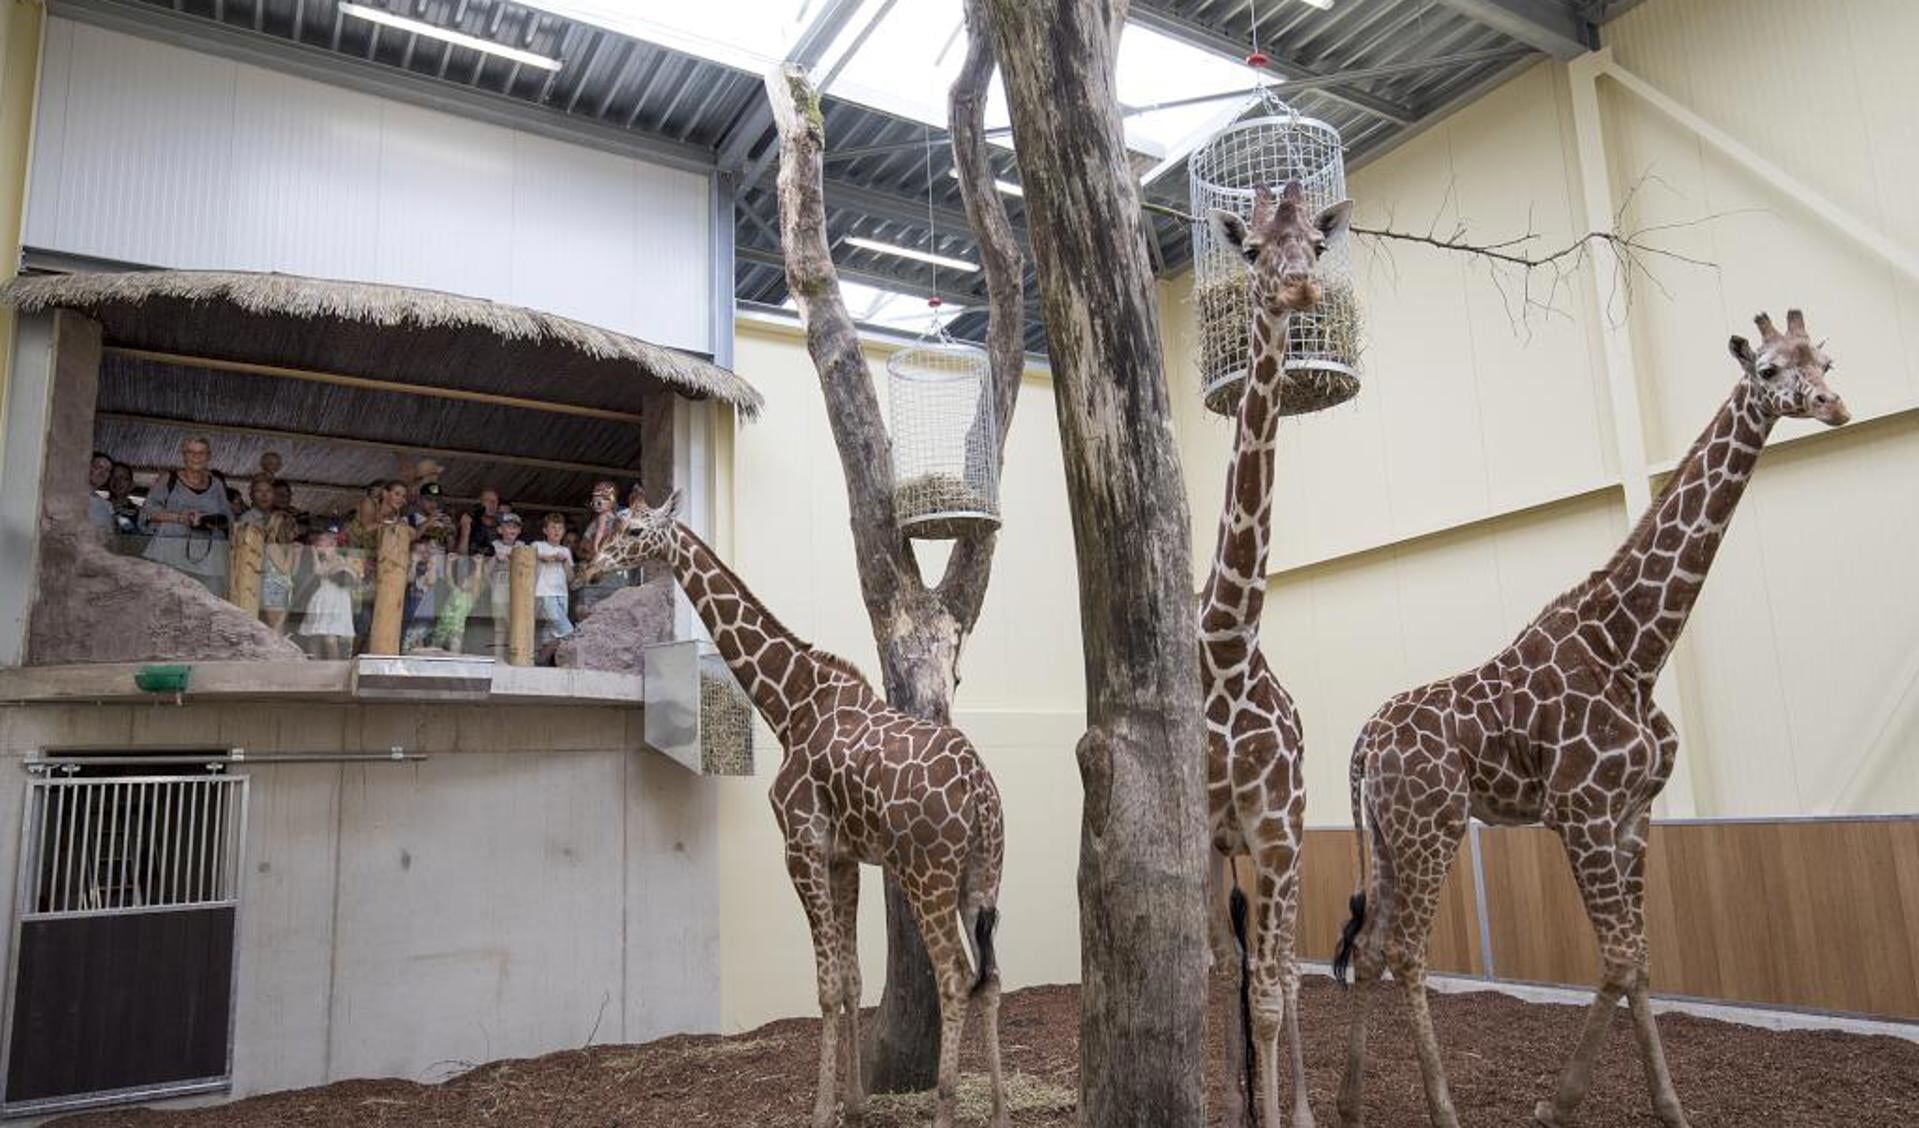 Bezoekers bewonderen de giraffen op ooghoogte. Foto: ZooParc Overloon.